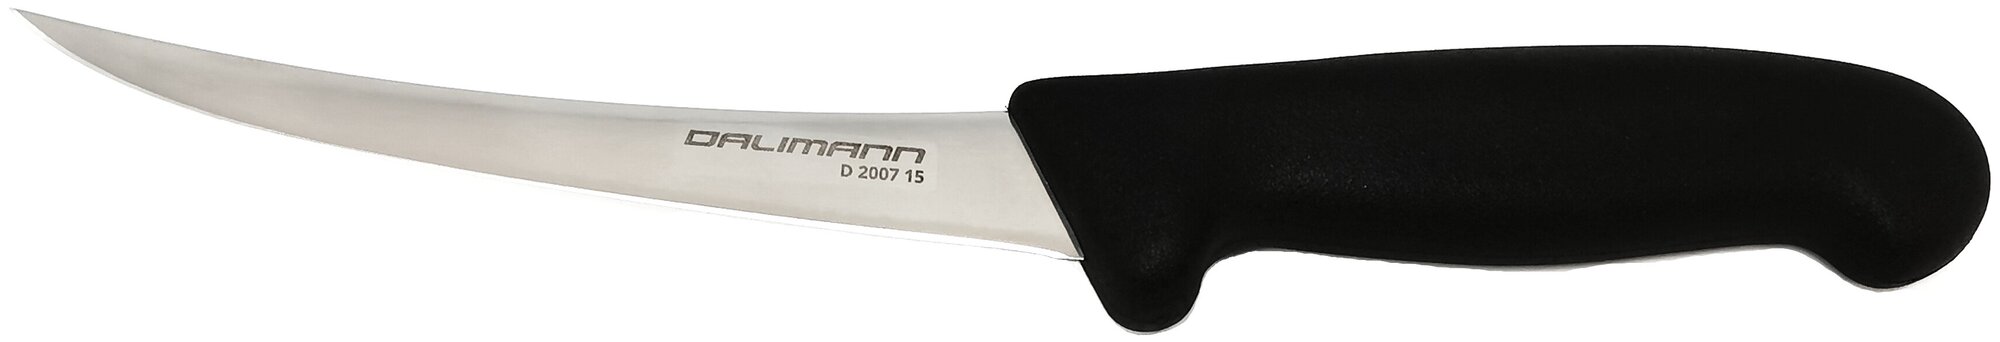 Обвалочный нож Dalimann, D-2007 (blc), 15 см